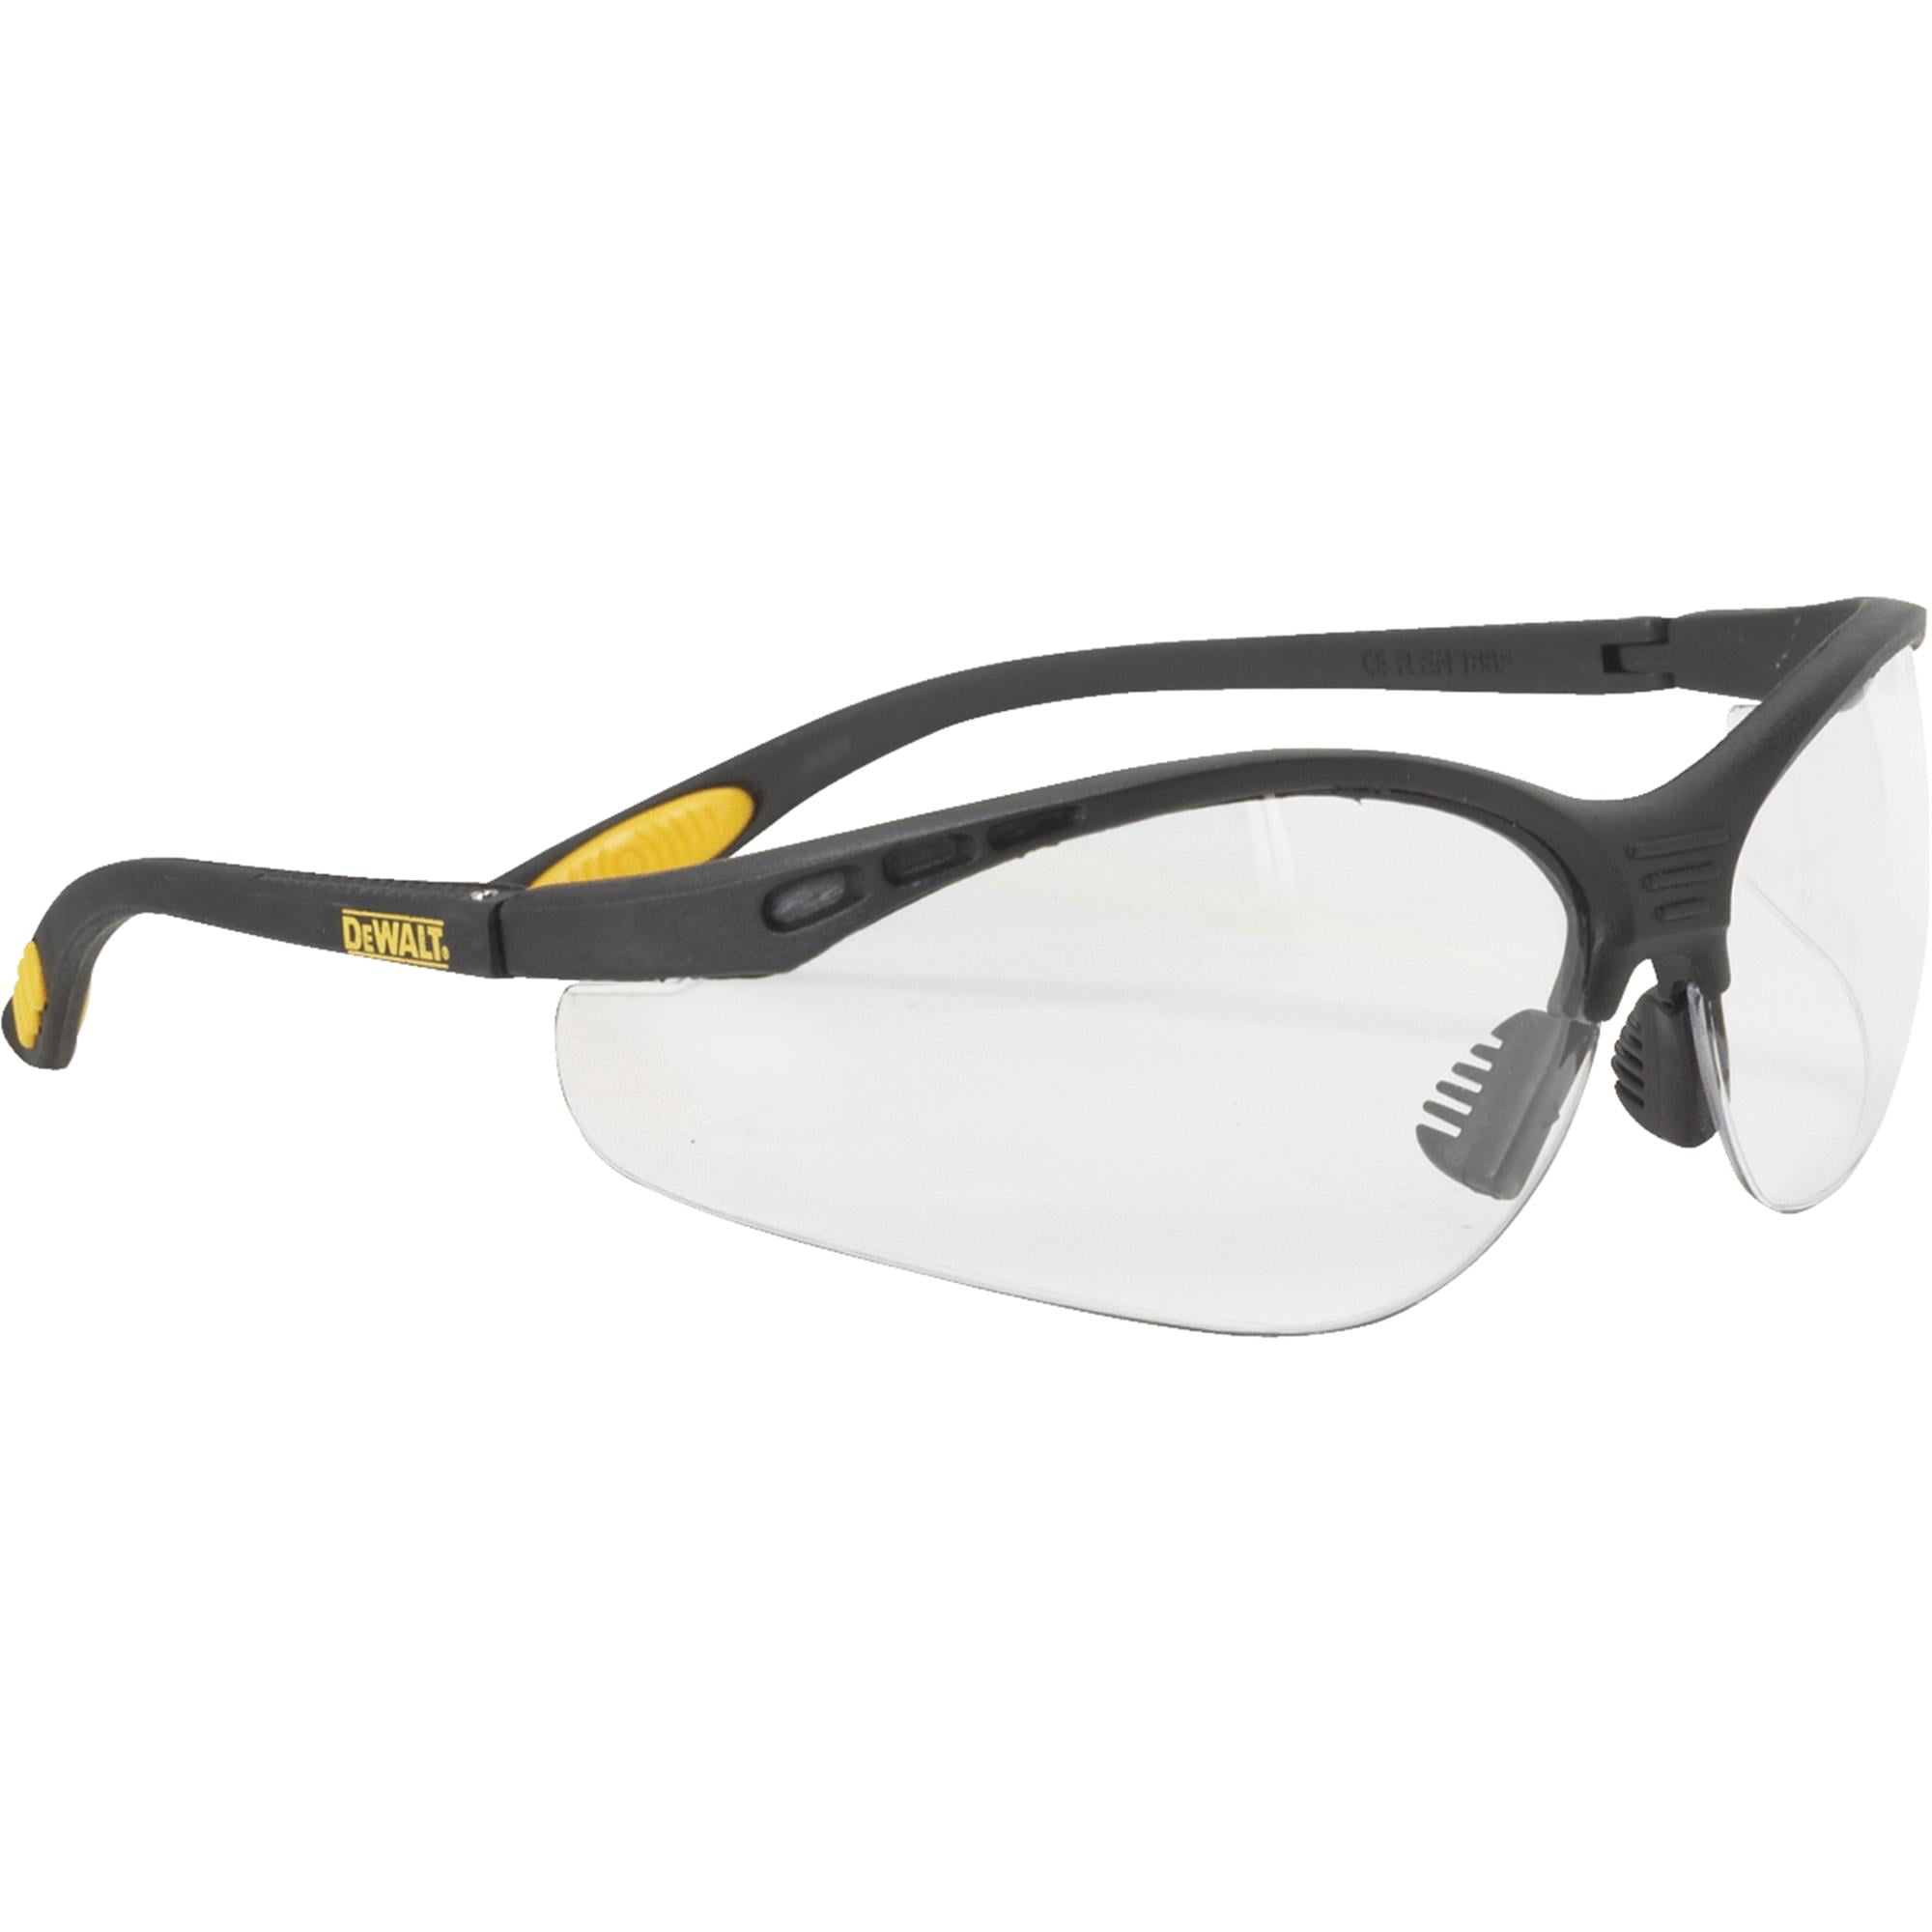 DeWalt Reinforcer Safety Glasses Unisex Durable Eyewear PPE Mens 